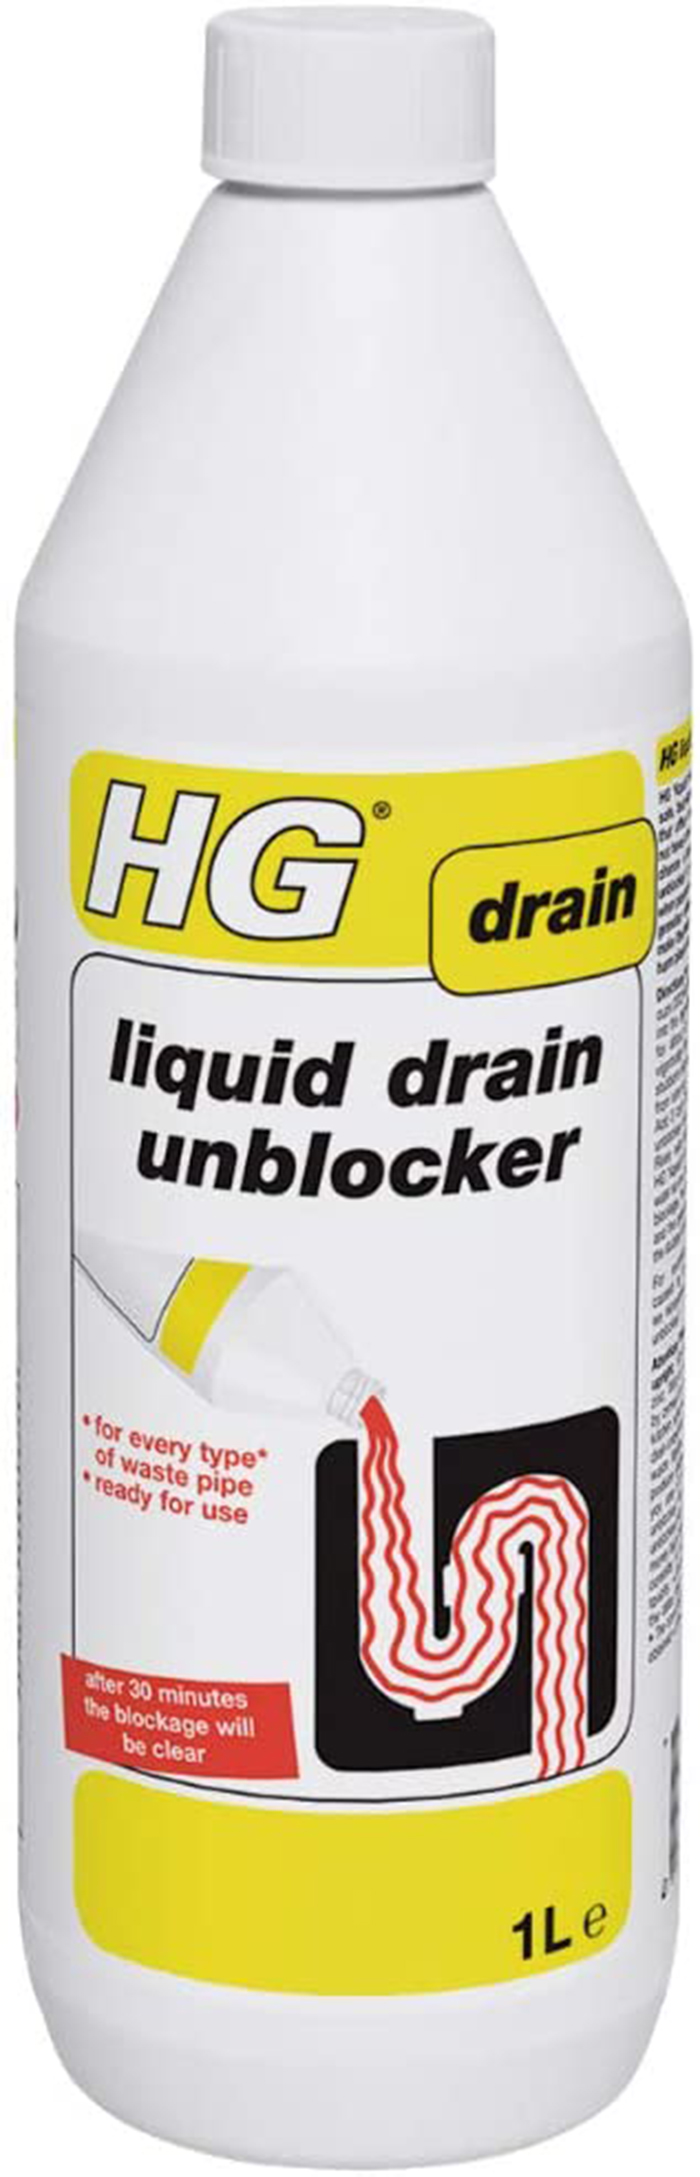 HG LIQUID DRAIN UNBLOCKER 1L